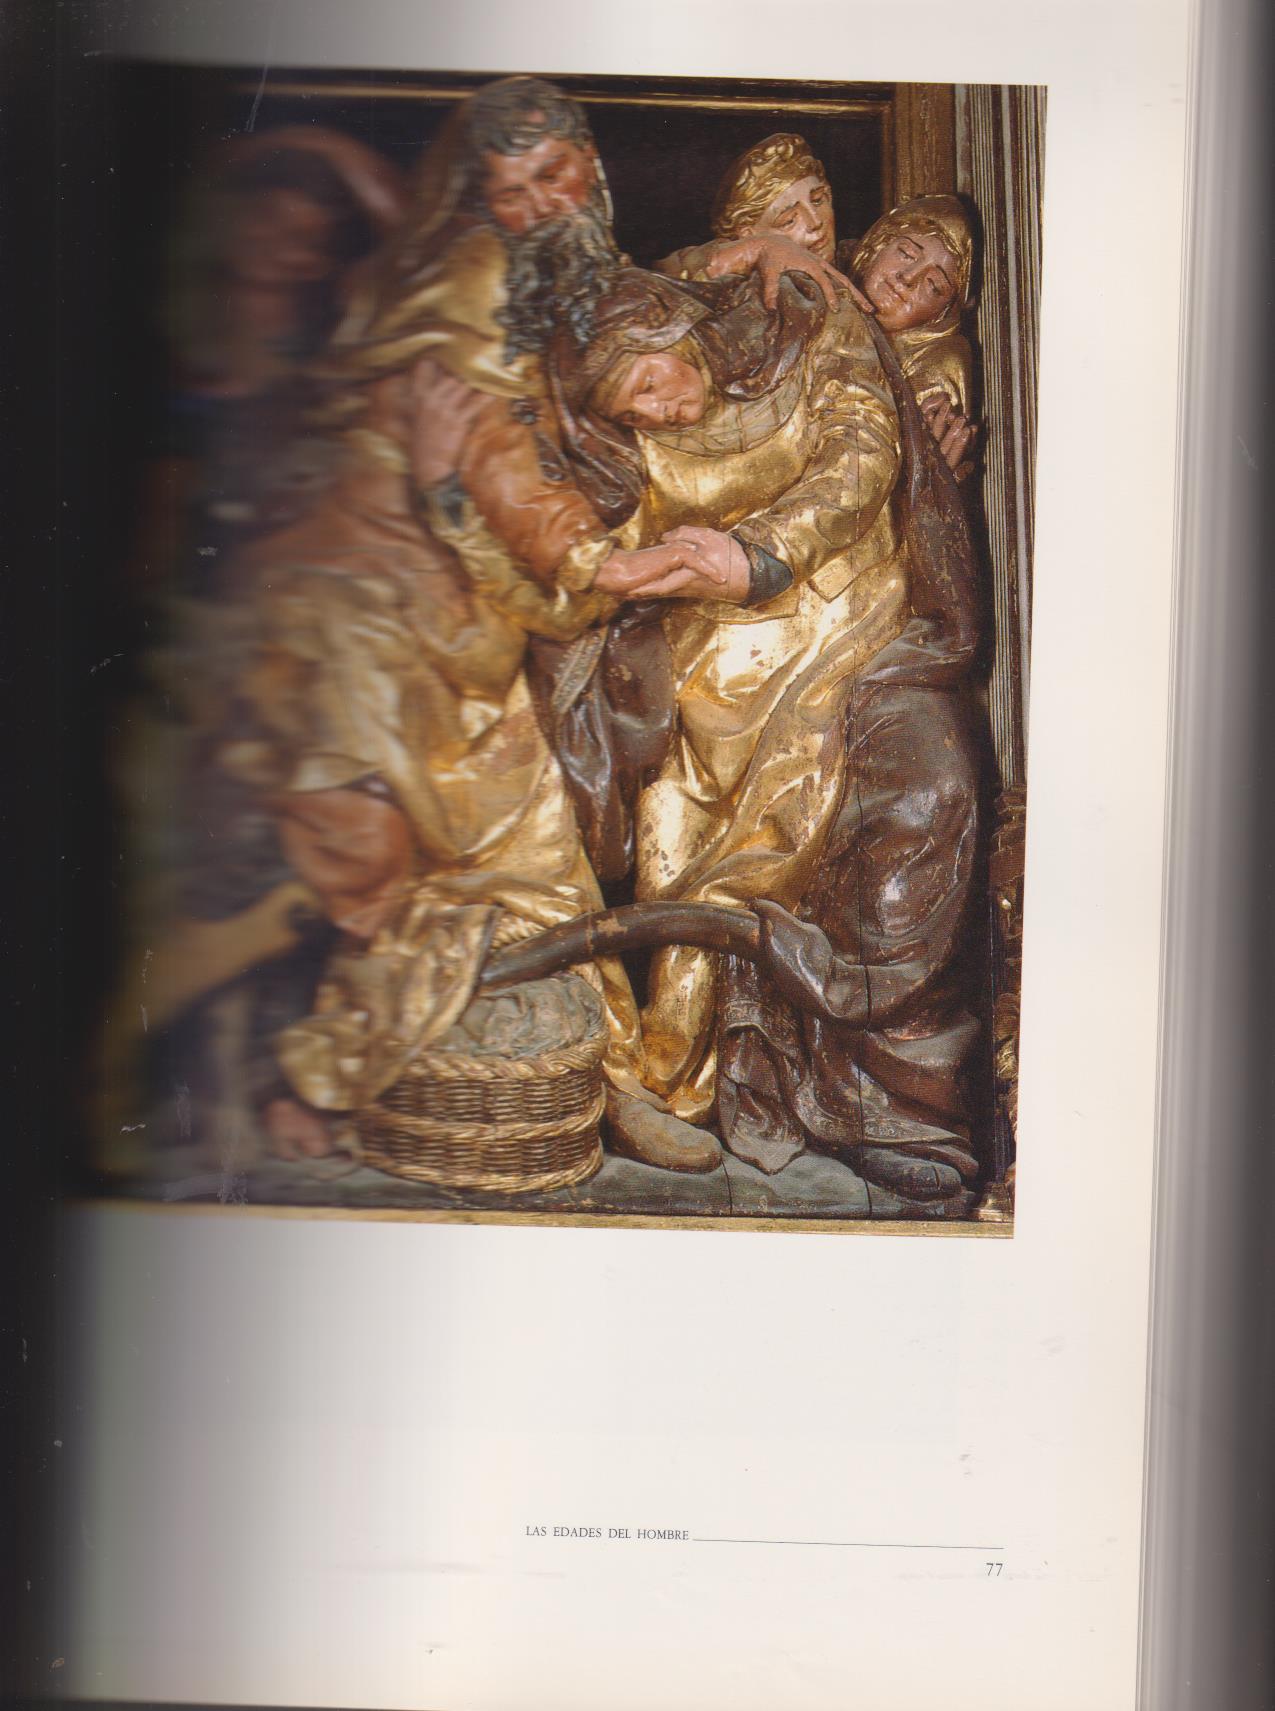 Las Edades del Hombre. El Arte en la Iglesia de Castilla y León. Castilla y León 1988